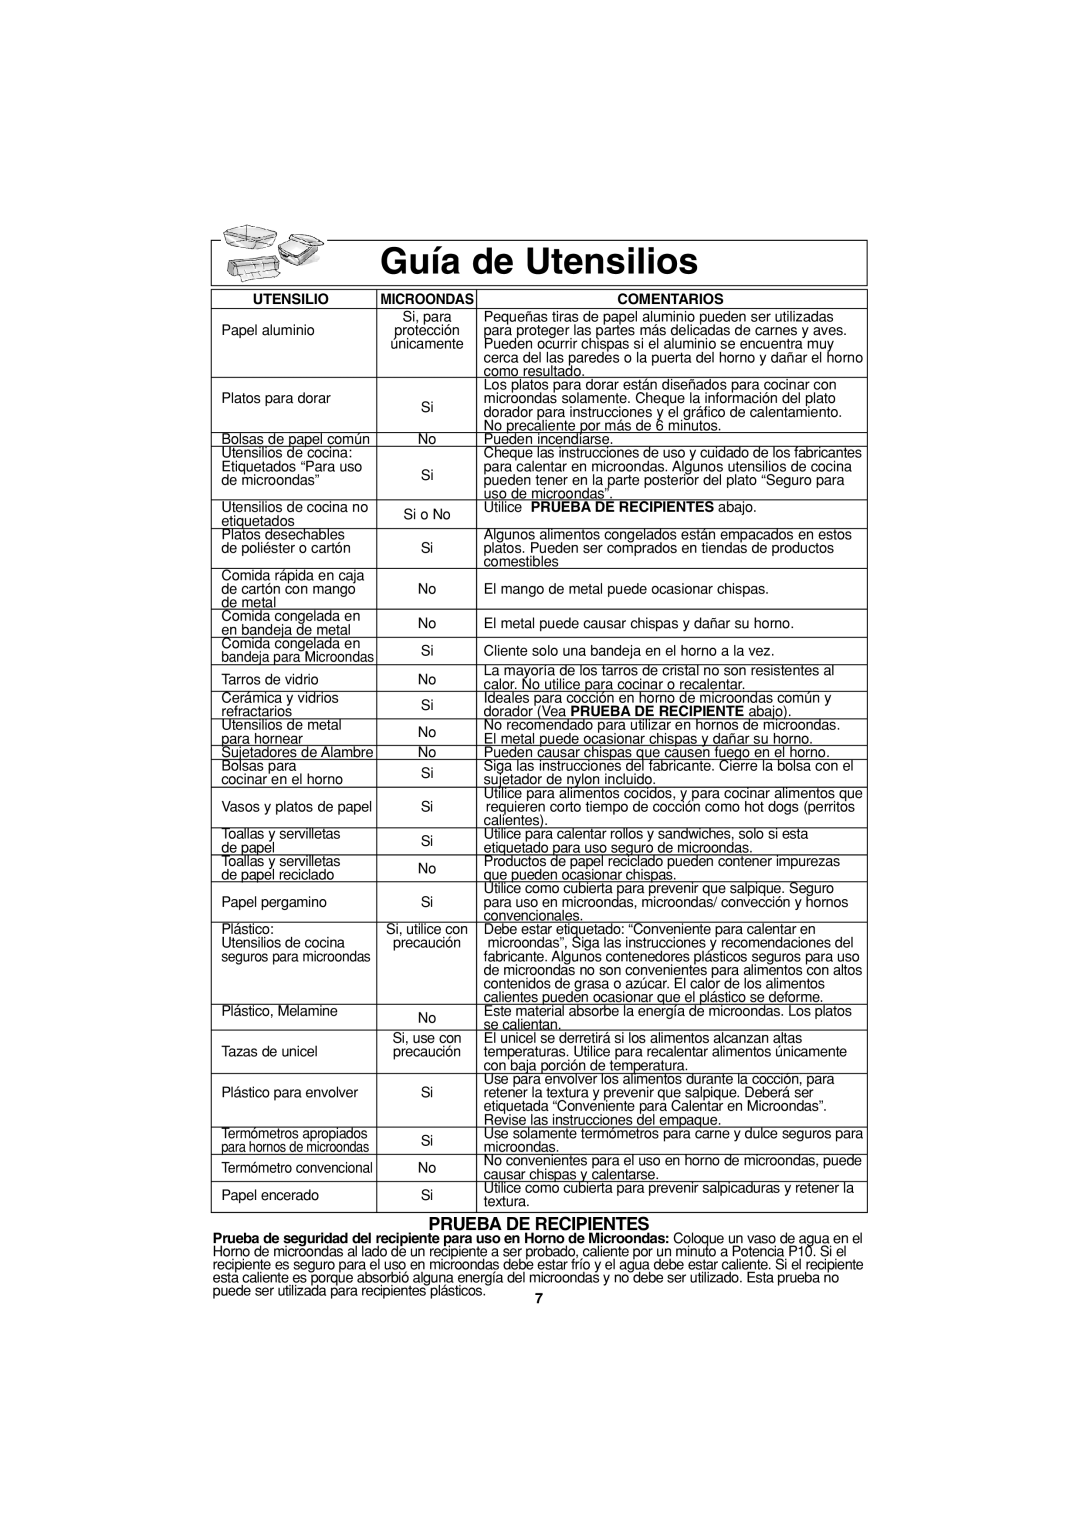 Panasonic NN-S423 important safety instructions Guía de Utensilios, Prueba De Recipientes 